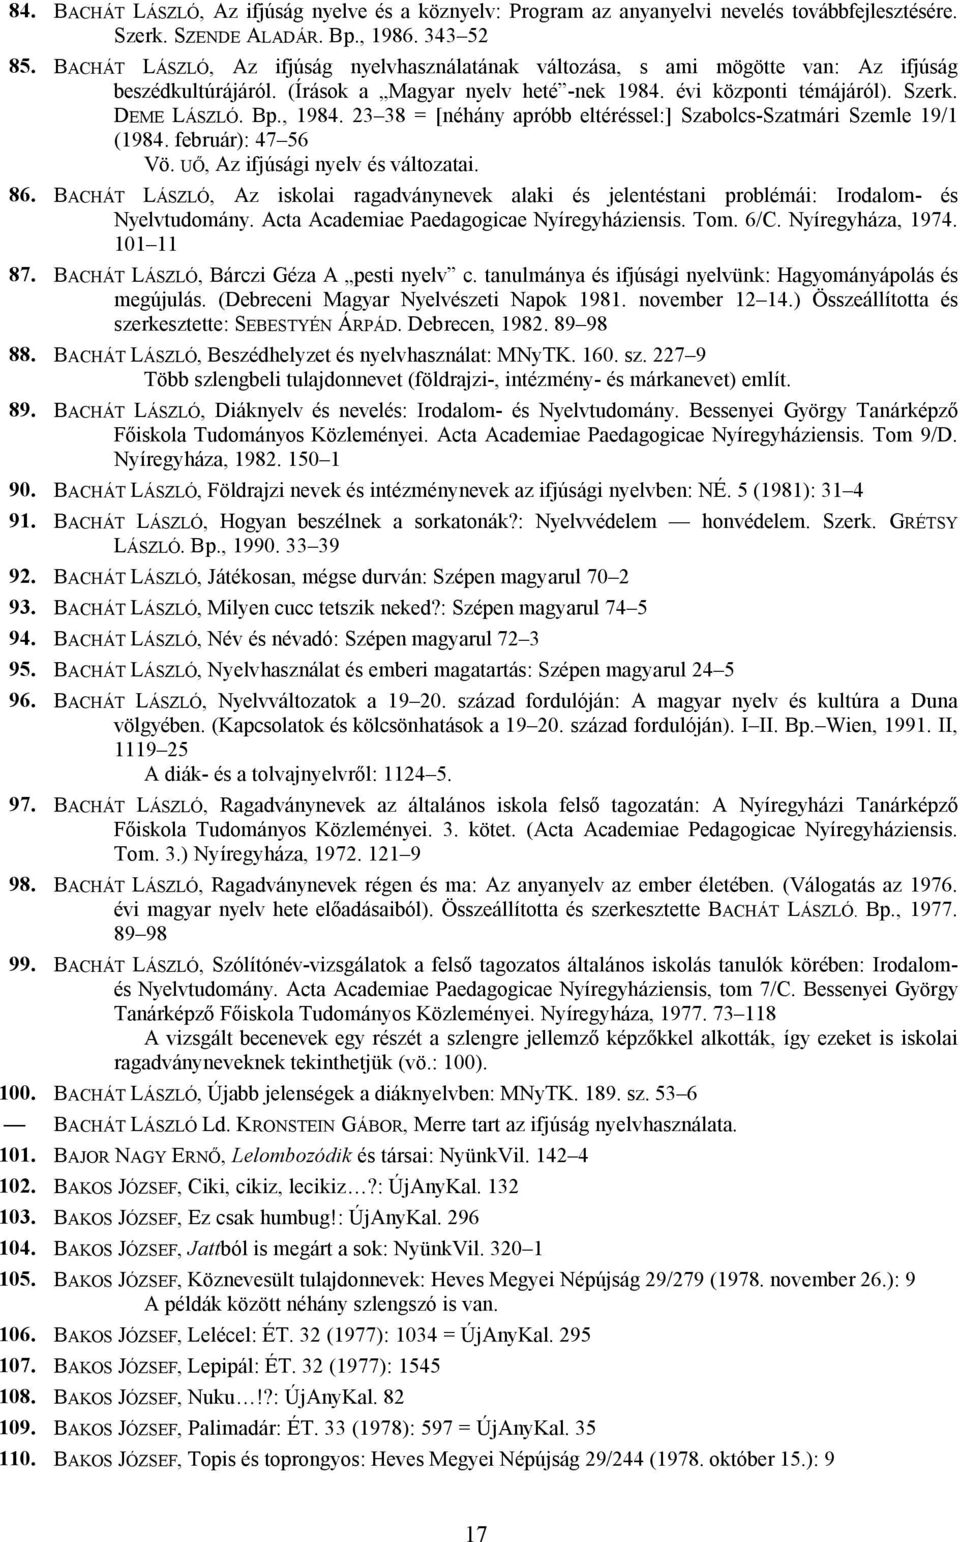 23 38 = [néhány apróbb eltéréssel:] Szabolcs-Szatmári Szemle 19/1 (1984. február): 47 56 Vö. UŐ, Az ifjúsági nyelv és változatai. 86.